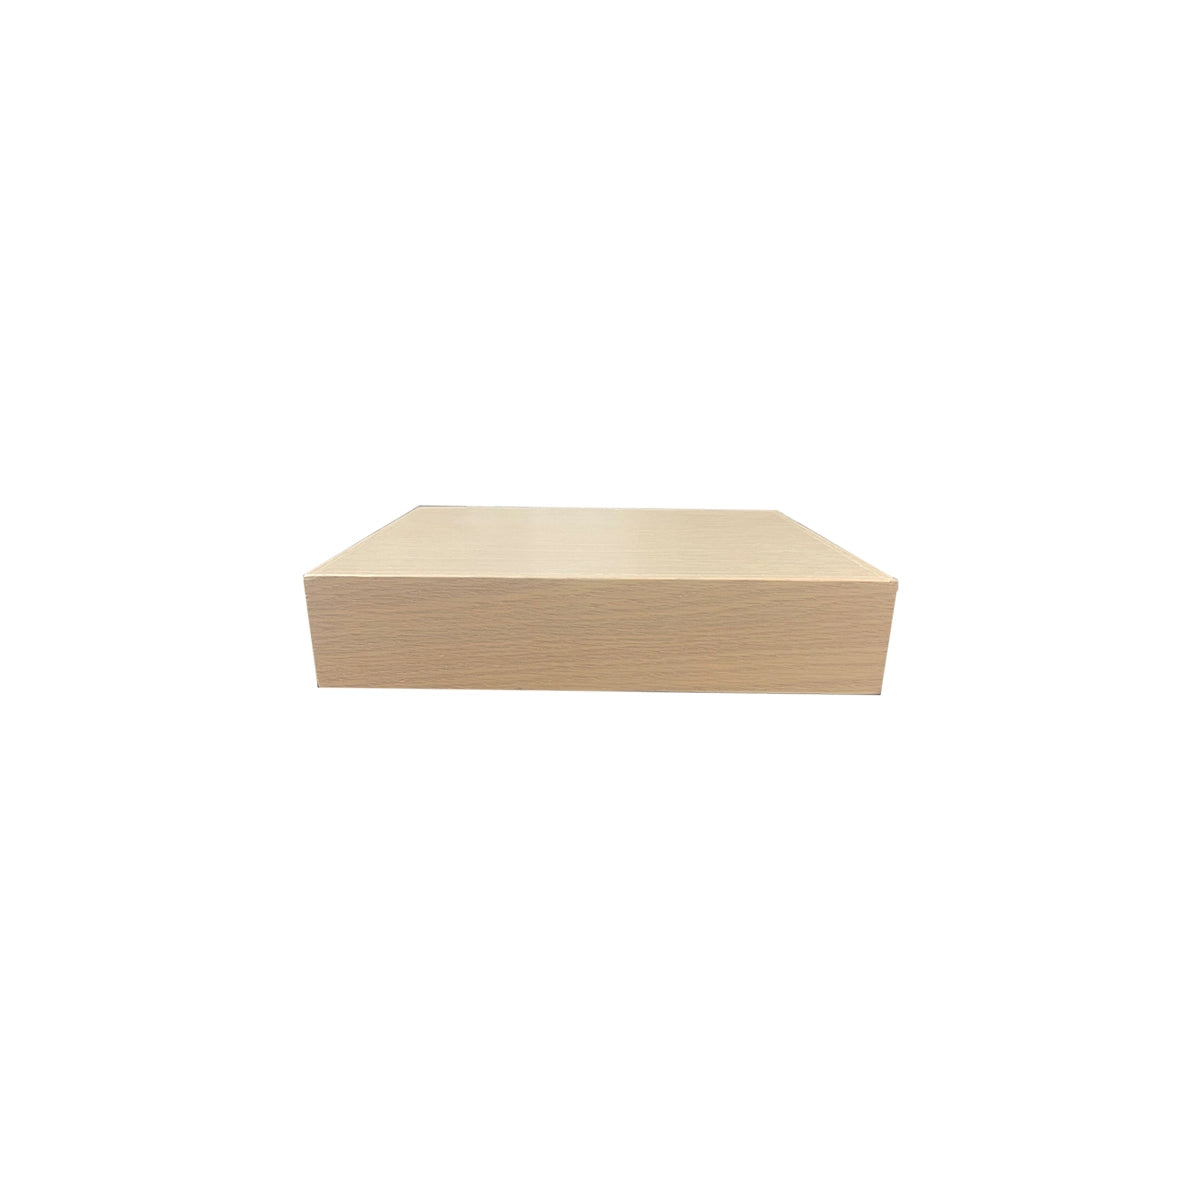 Floating Shelf White Oak 12"x10" (YN-FSWTOAK12)